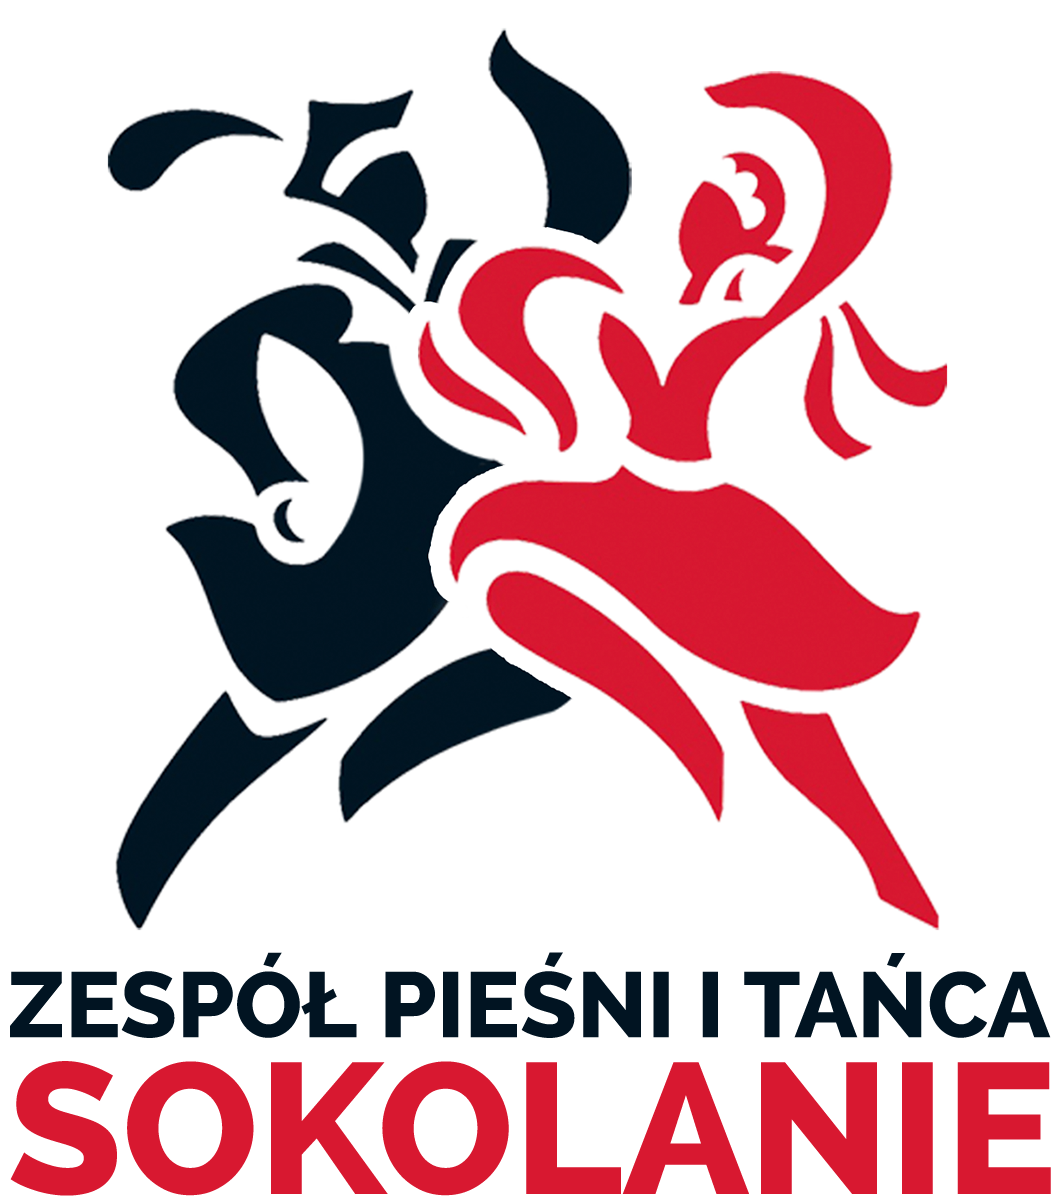 zpit_sokolanie_logo